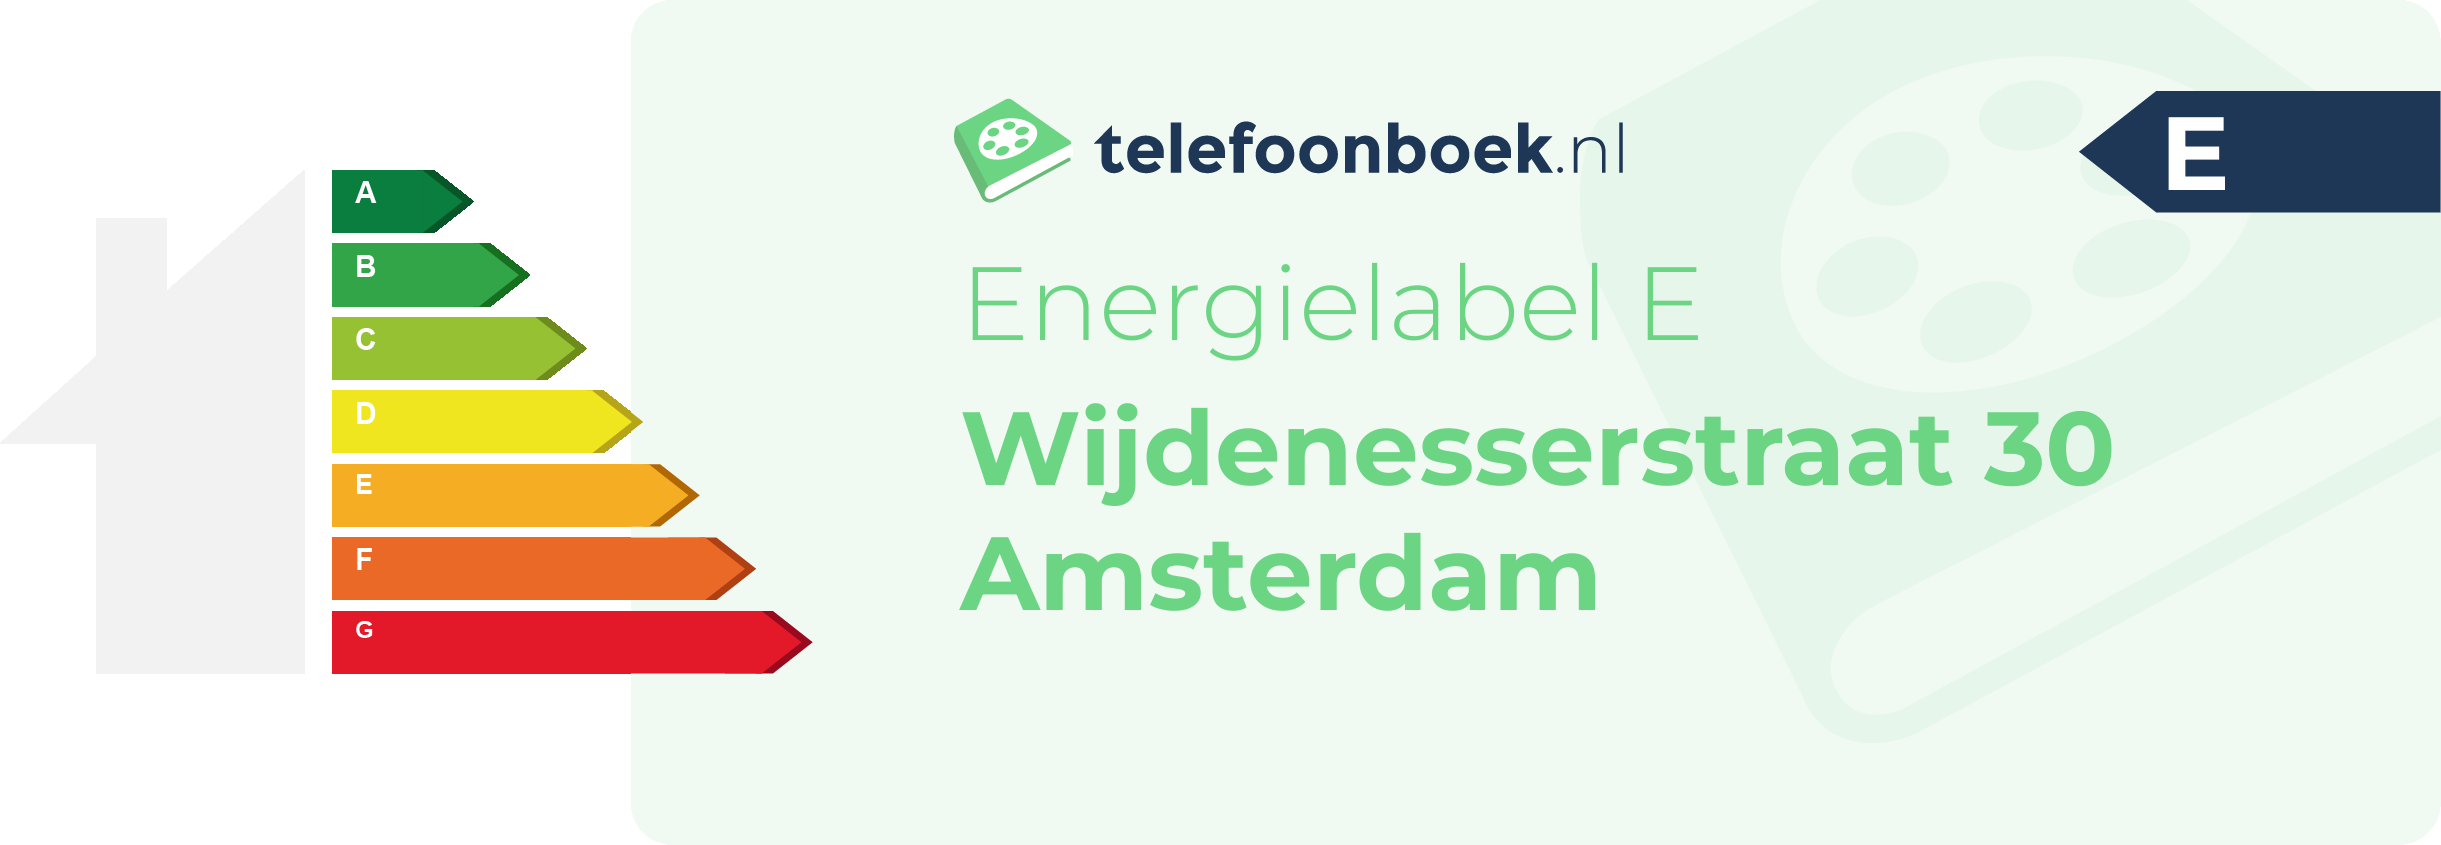 Energielabel Wijdenesserstraat 30 Amsterdam